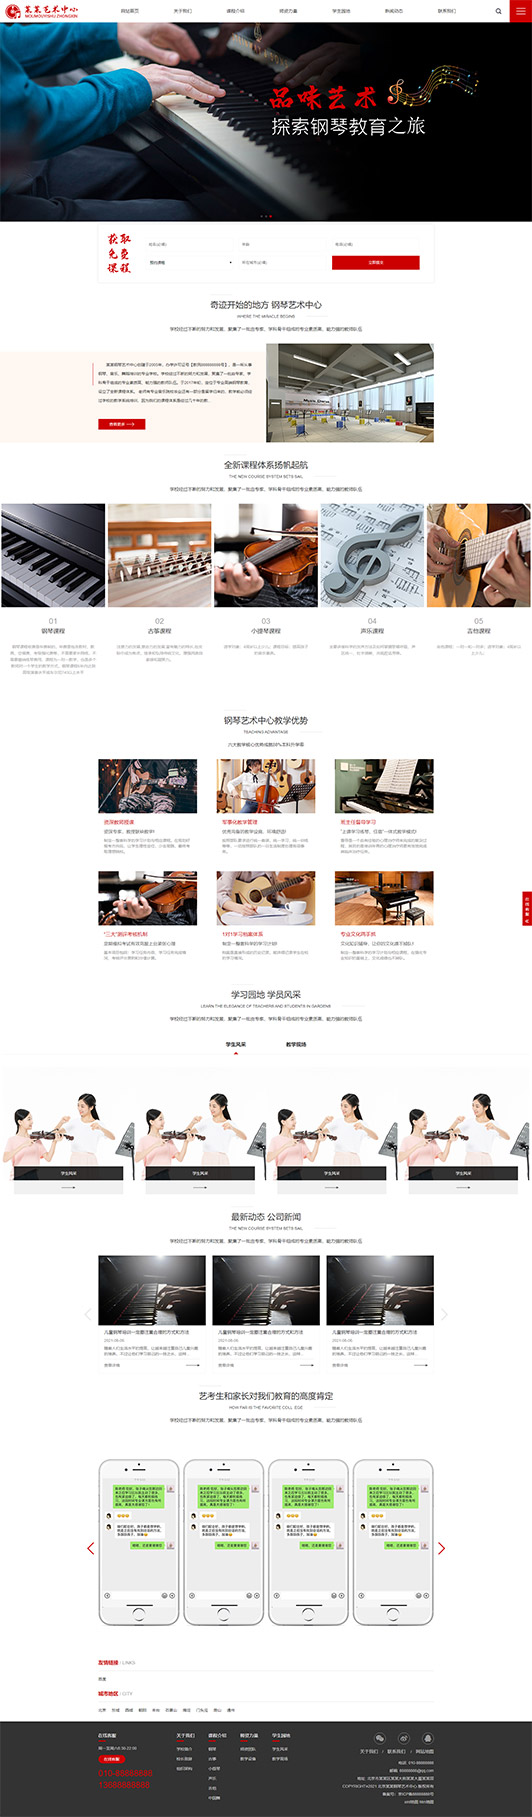 阿里钢琴艺术培训公司响应式企业网站